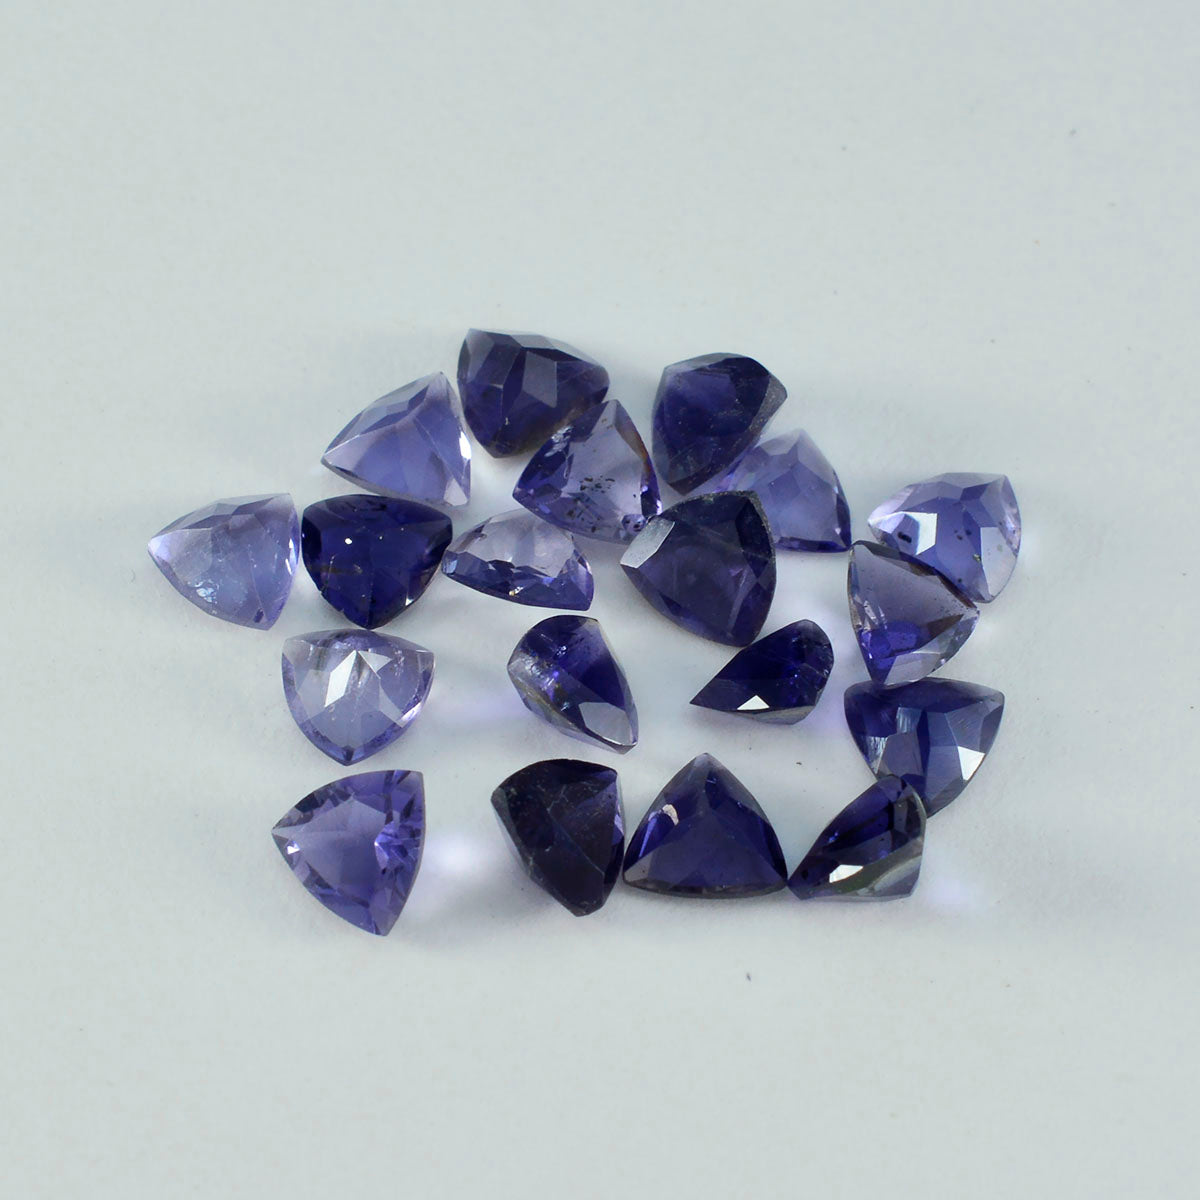 riyogems 1 шт. синий иолит ограненный 7x7 мм форма триллиона довольно качественный свободный драгоценный камень